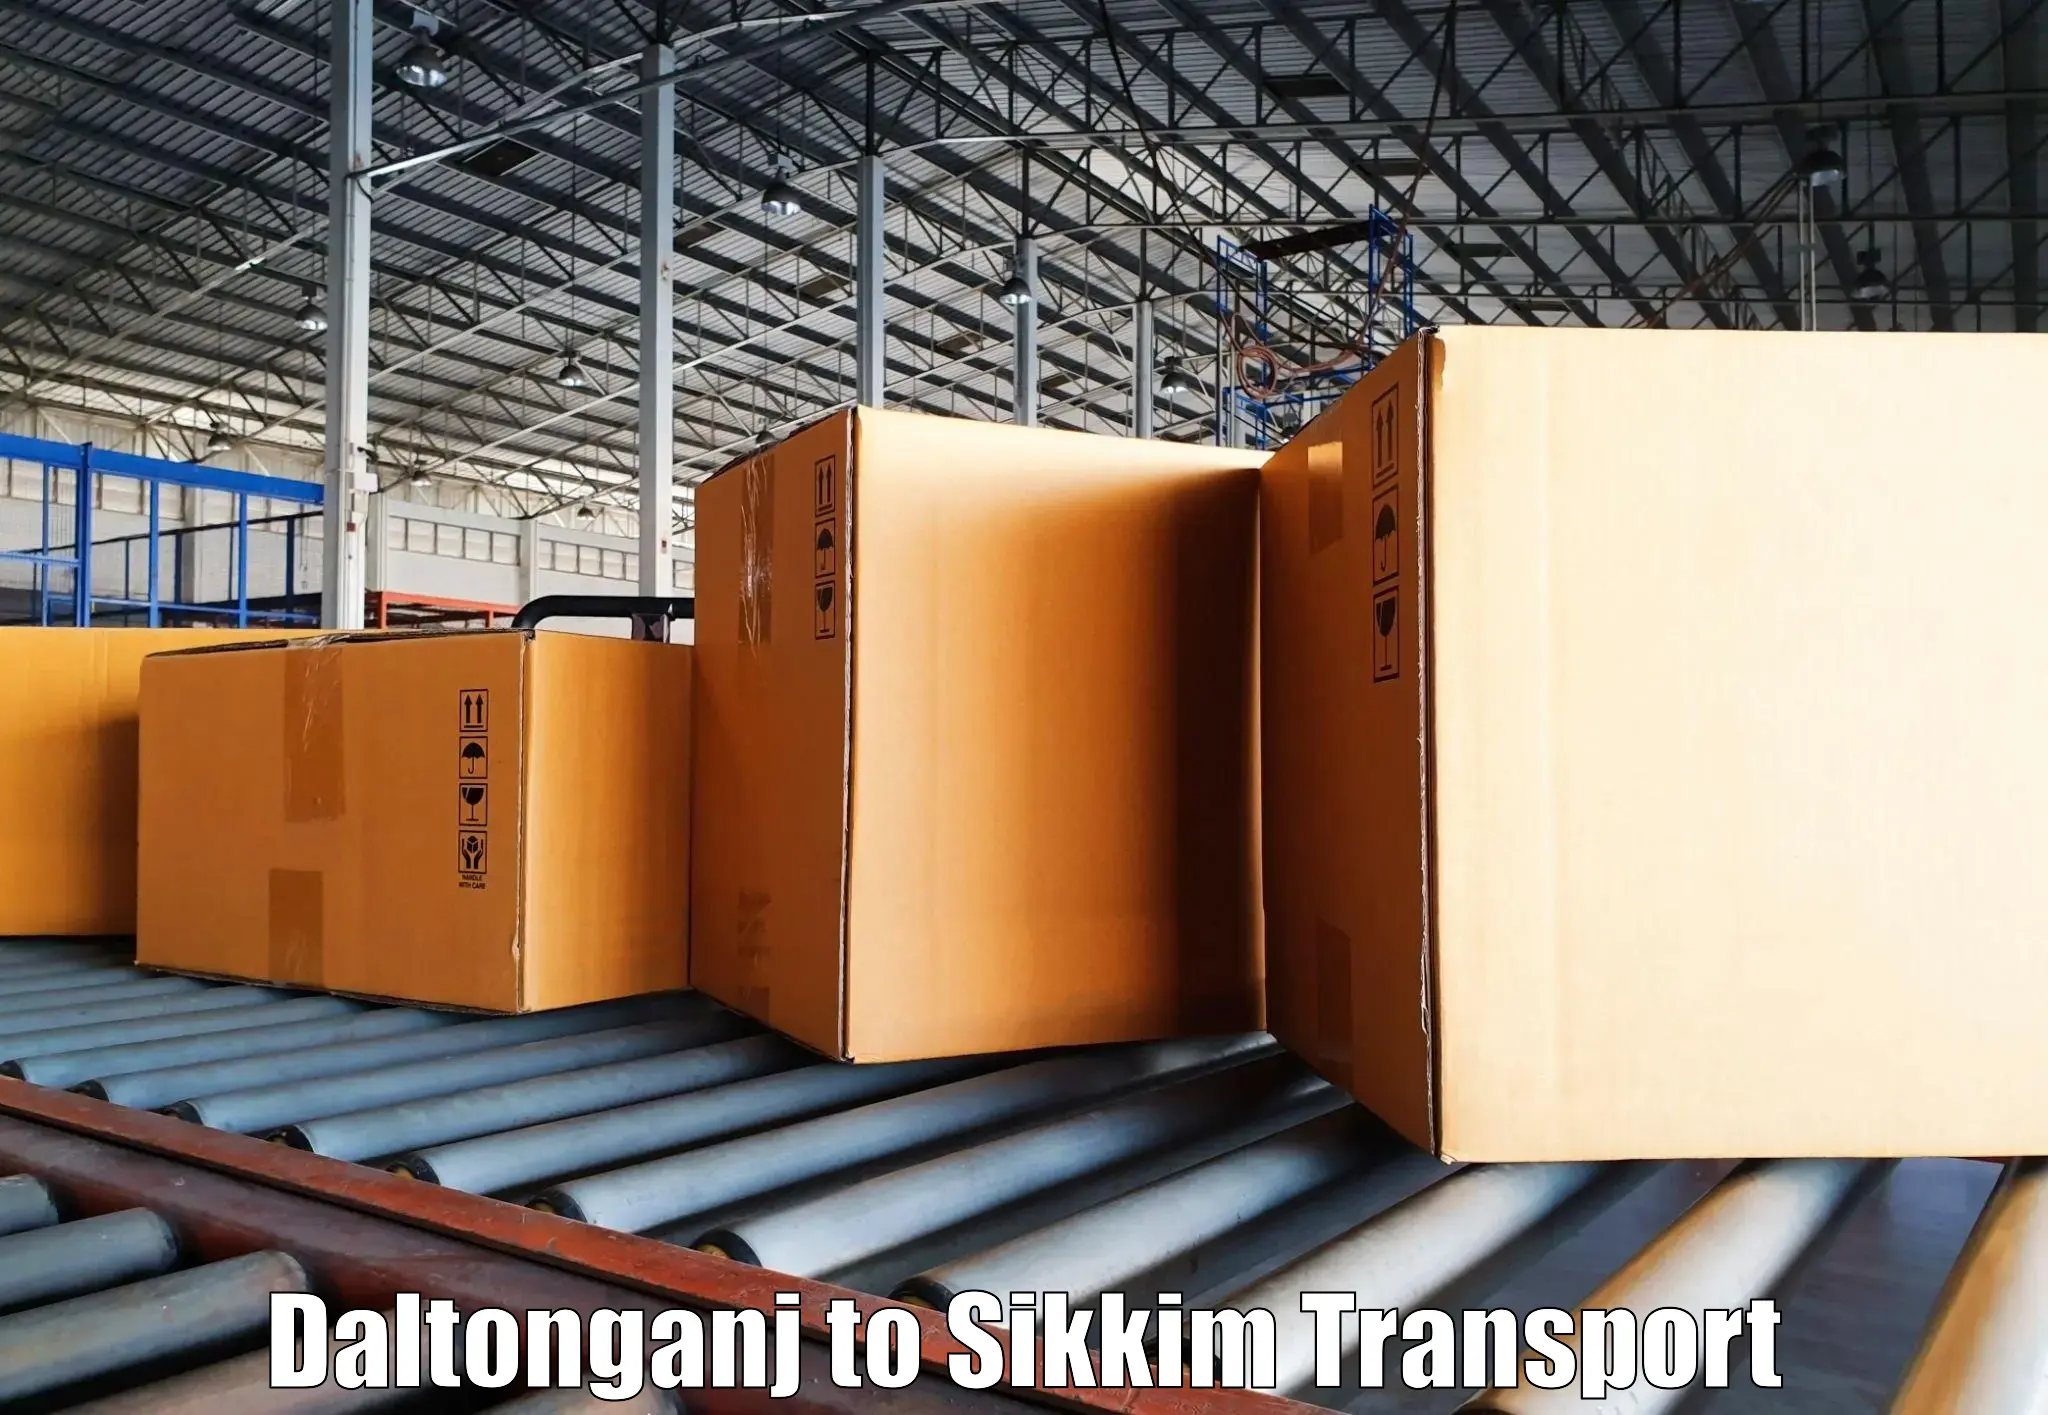 Truck transport companies in India Daltonganj to Mangan